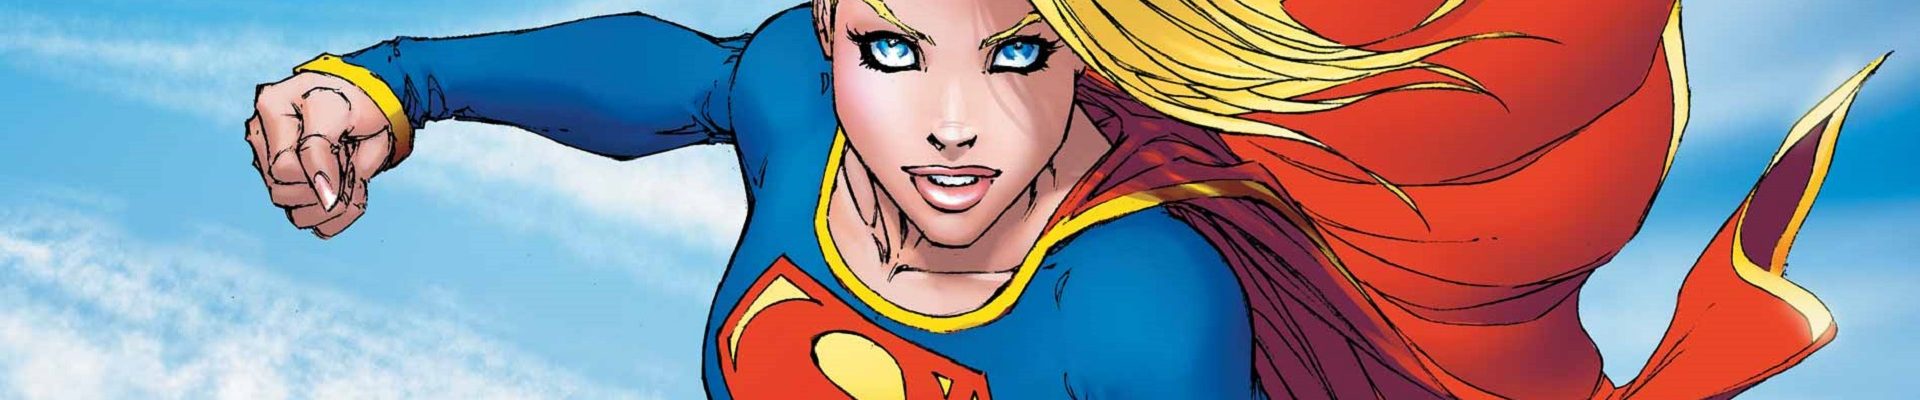 Supergirl Nick Spencer